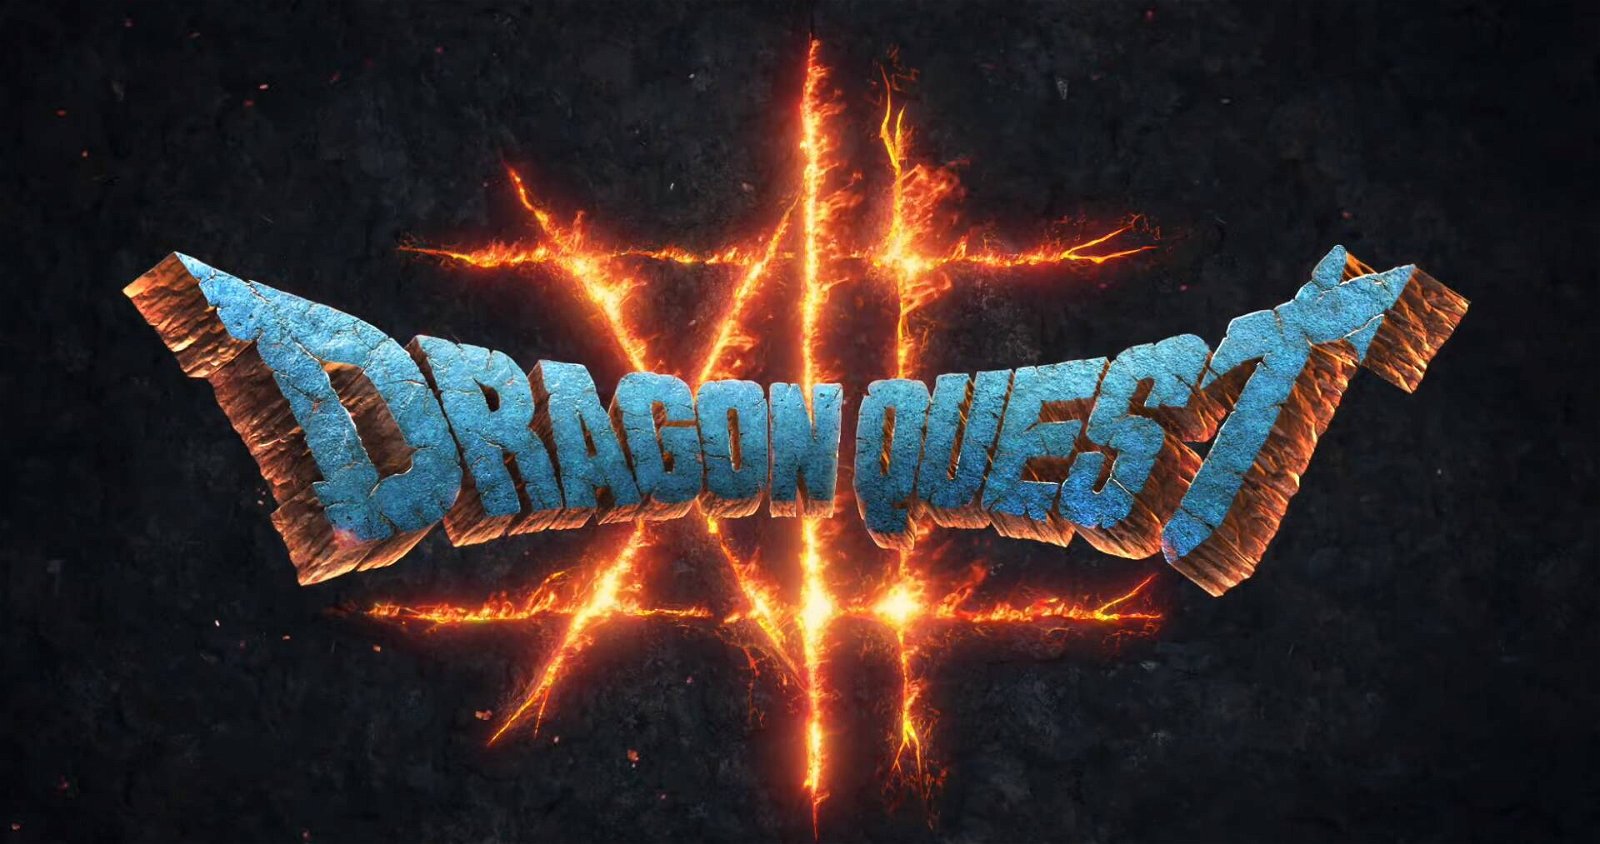 Immagine di Dragon Quest 12 The Flames of Fate: annunciato il nuovo titolo della storica saga JRPG